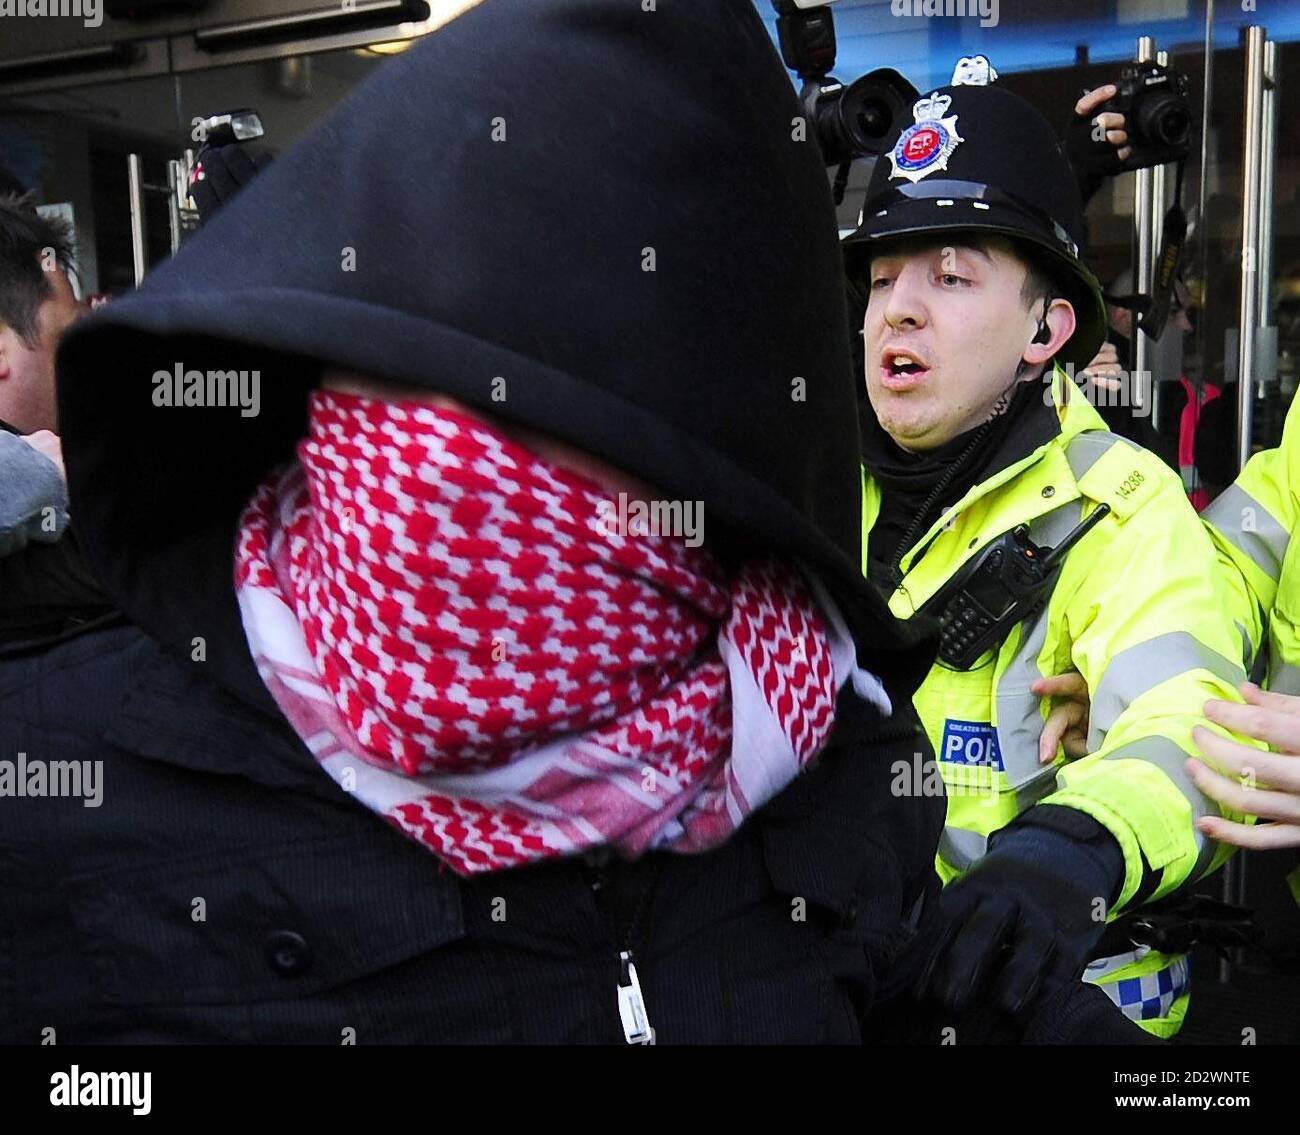 La policía impide que los manifestantes lleguen al Presidente Nacional de la Unión Nacional de estudiantes Aaron Porter, quien fue escoltado a la seguridad por la policía después de que fue rodeado por manifestantes en la manifestación de la NUS en Manchester hoy. Foto de stock